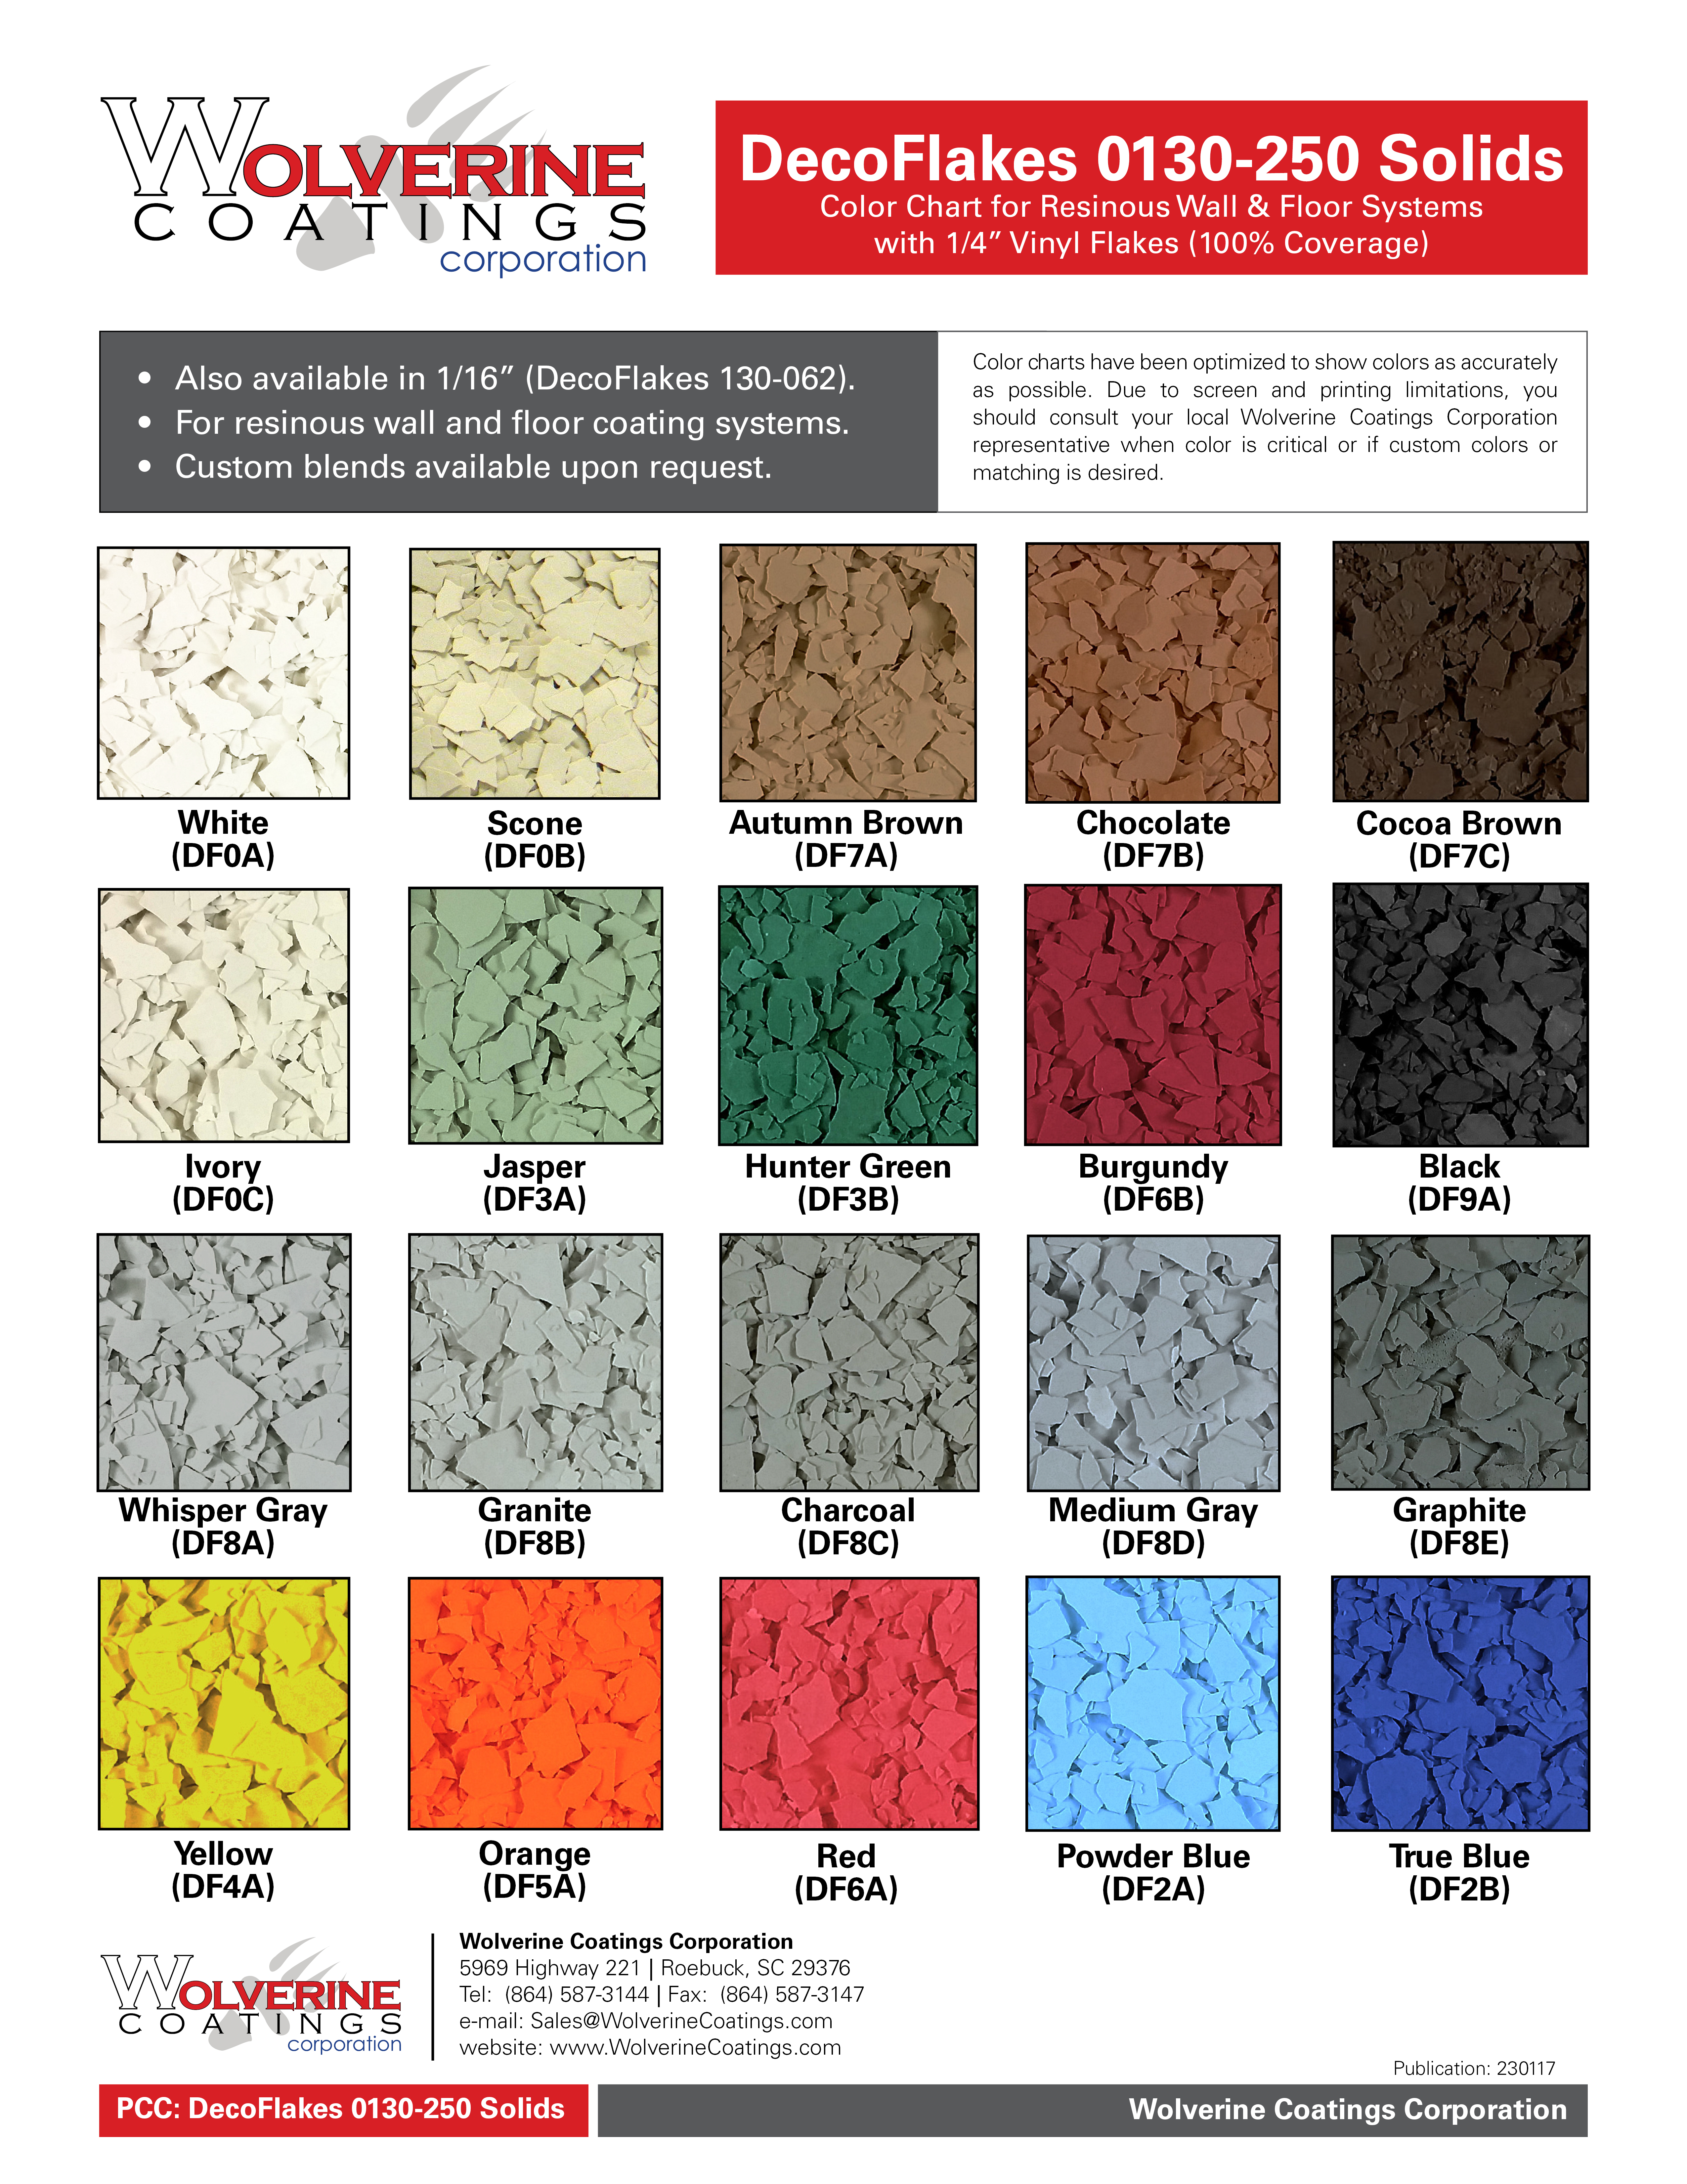 DecoFlakes 0130-250 Solids Color Chart - PCC